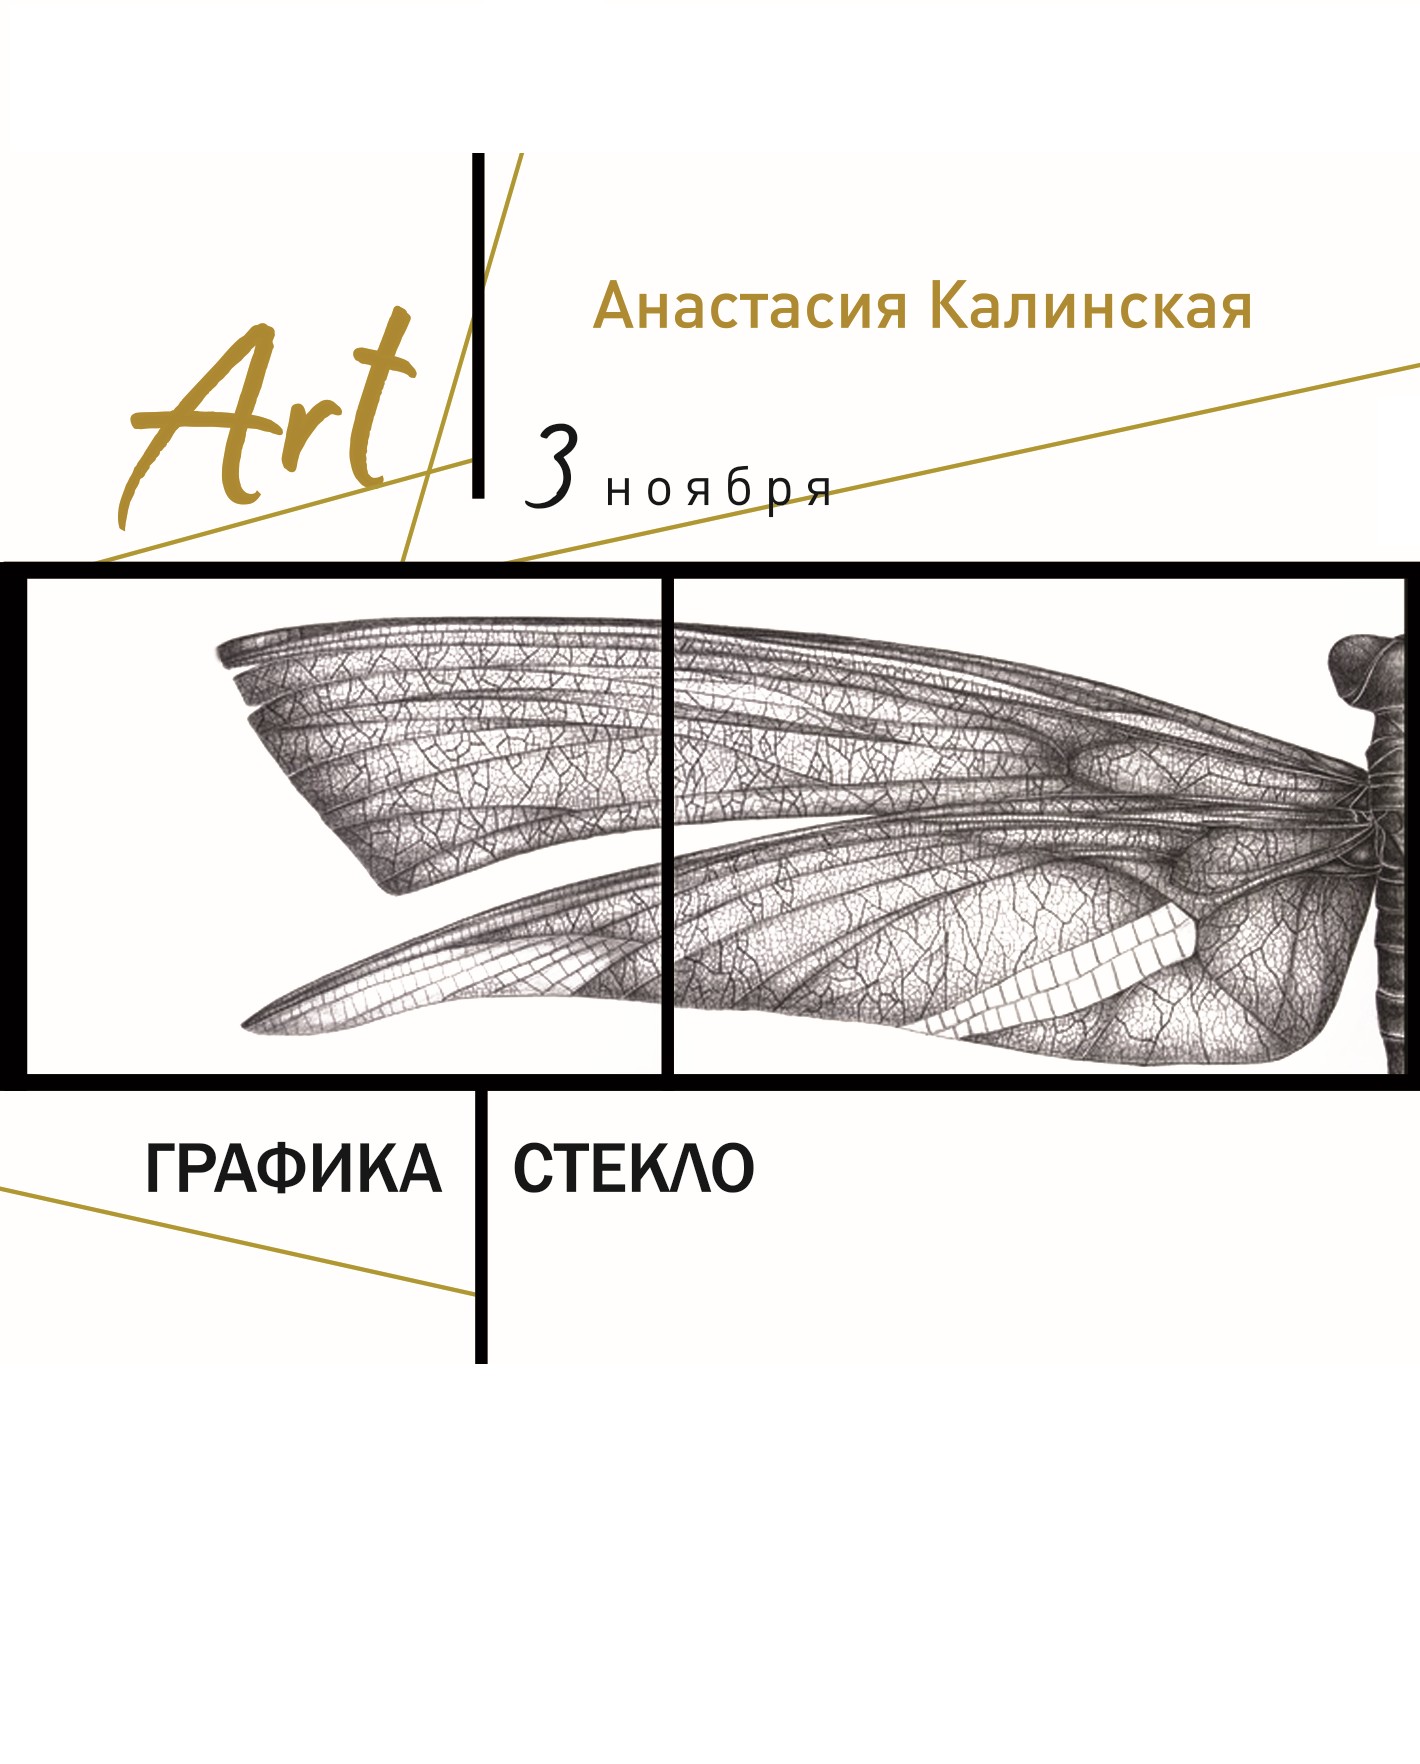 персональная выставка Анастасии Калинской